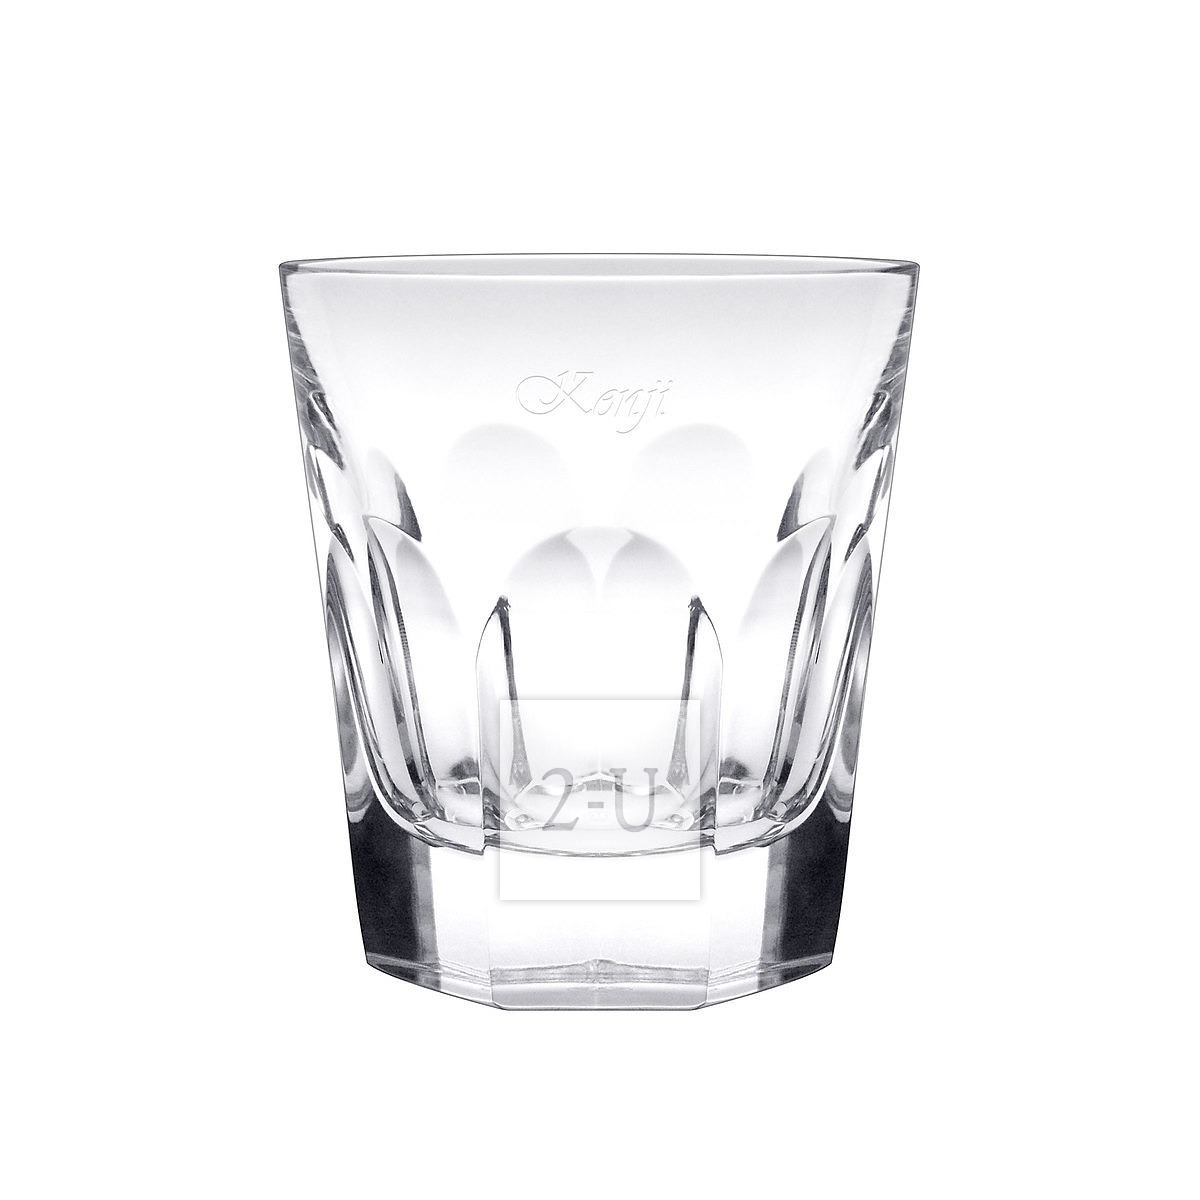 法國巴卡拉 Baccarat Harcourt 係列水晶玻璃古典杯